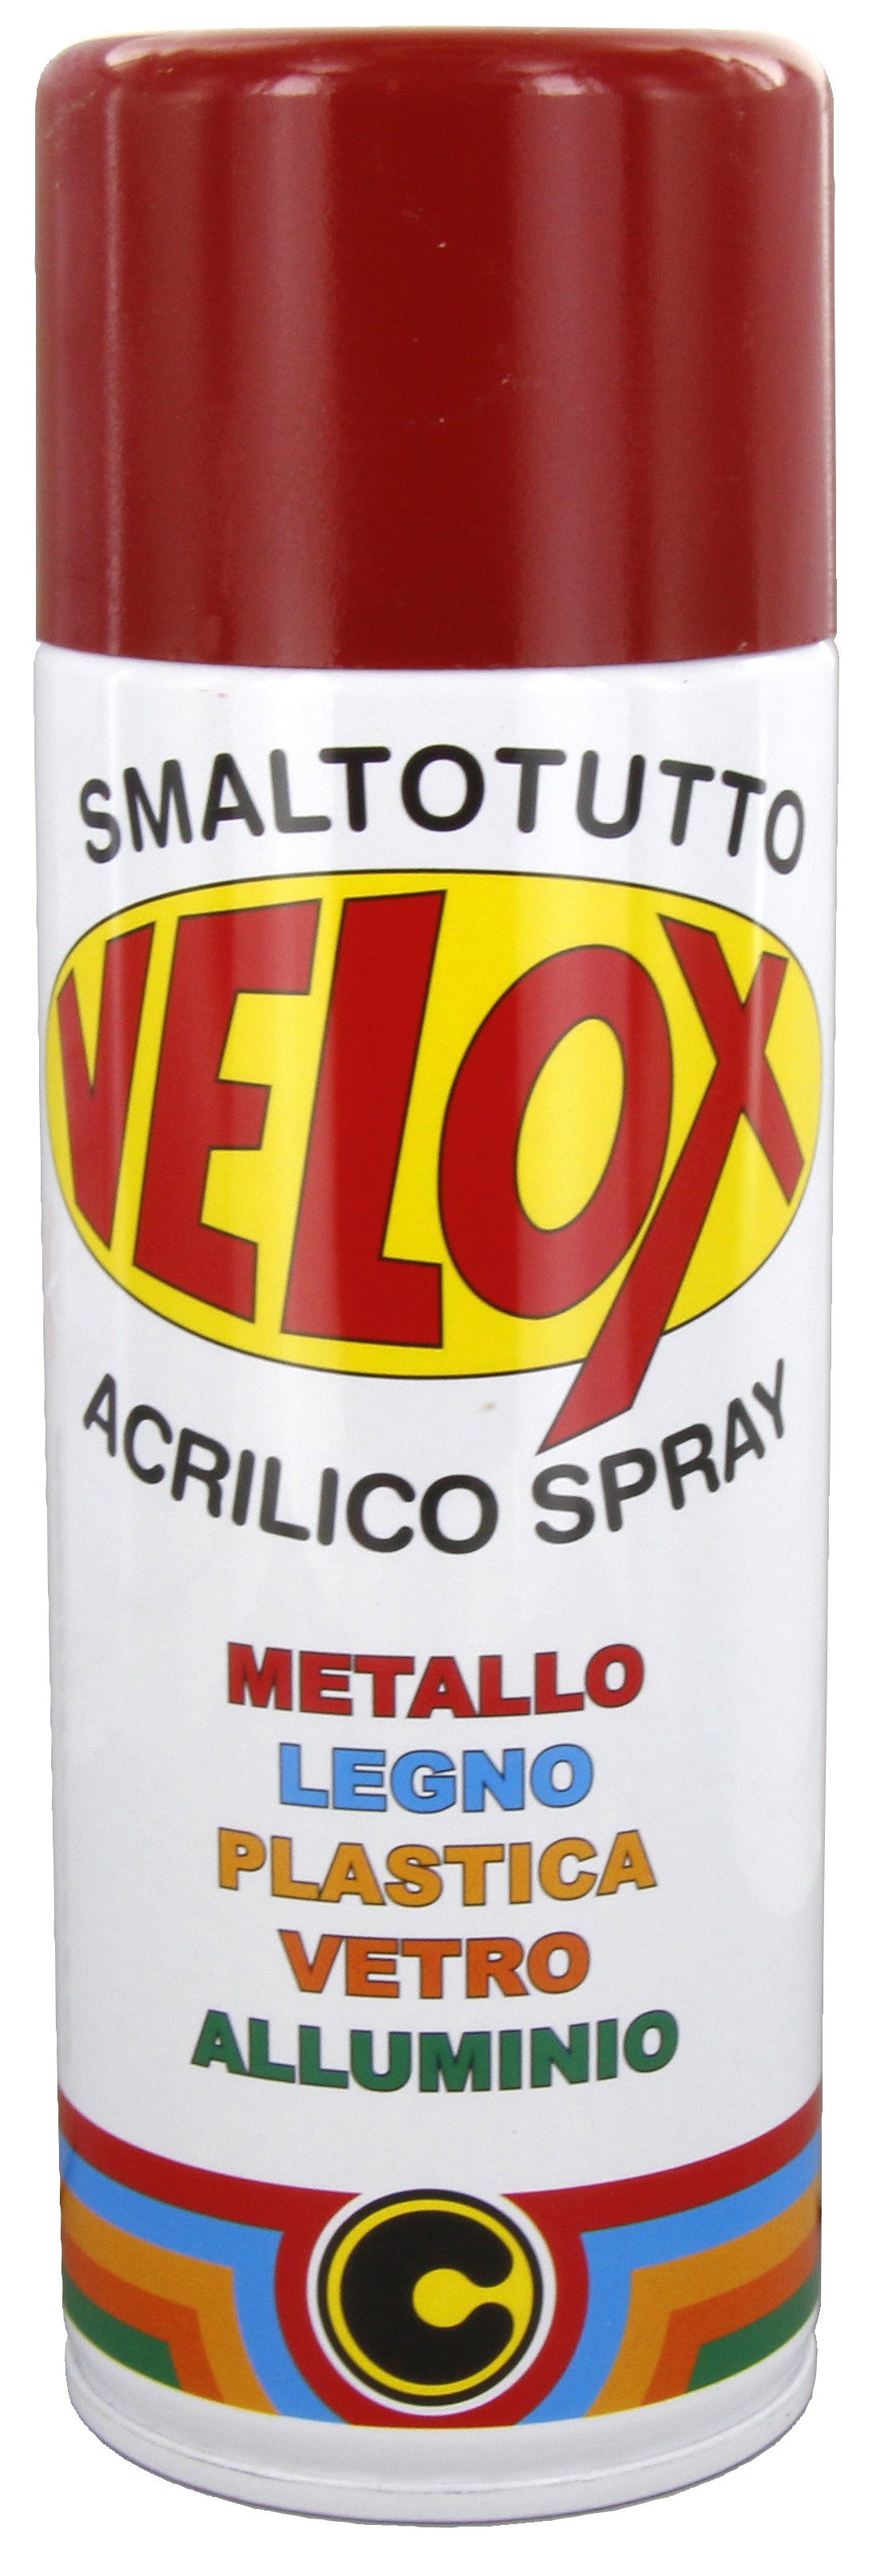 Velox spray acrilico rosso rubino ral 3003 ITAL G.E.T.E.